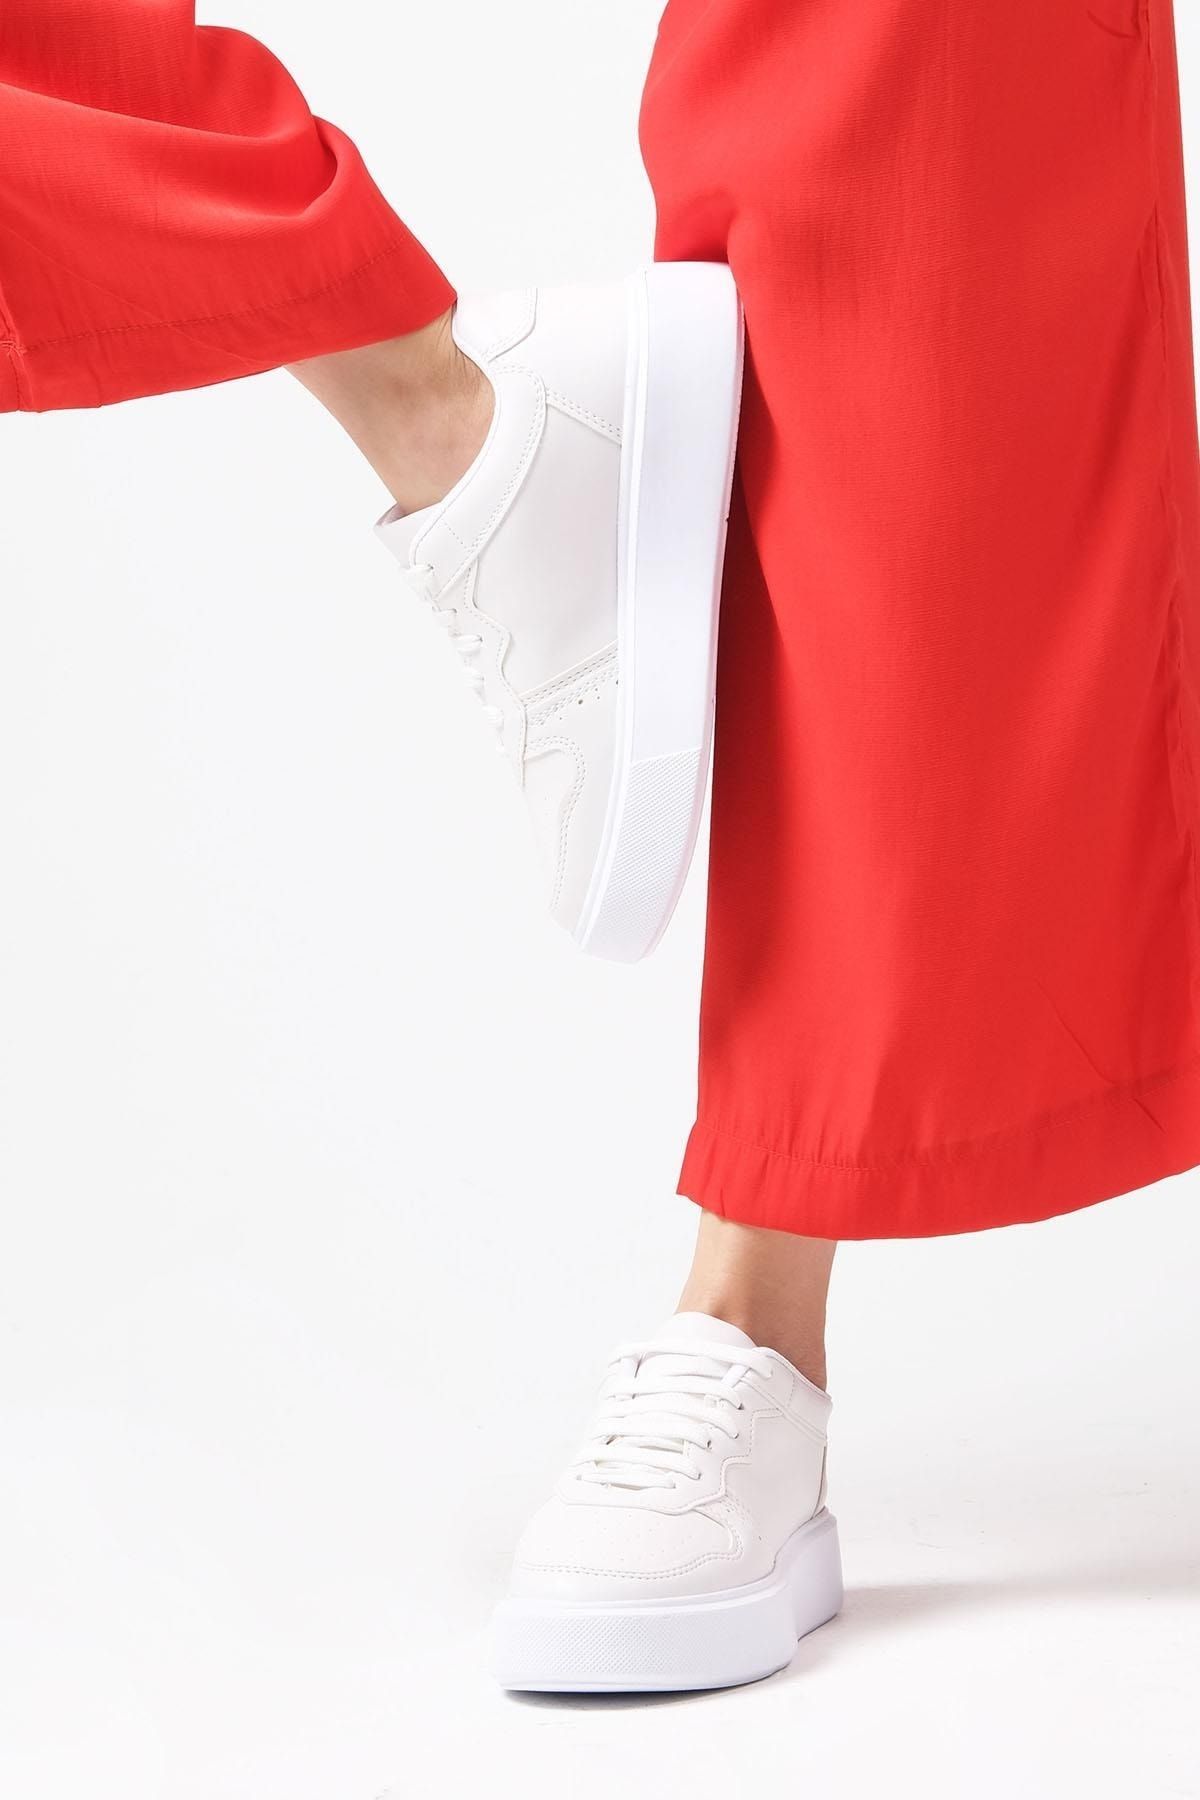 Mio Gusto Flavia Kırık Beyaz Renk Kadın Günlük Spor Ayakkabı Sneaker